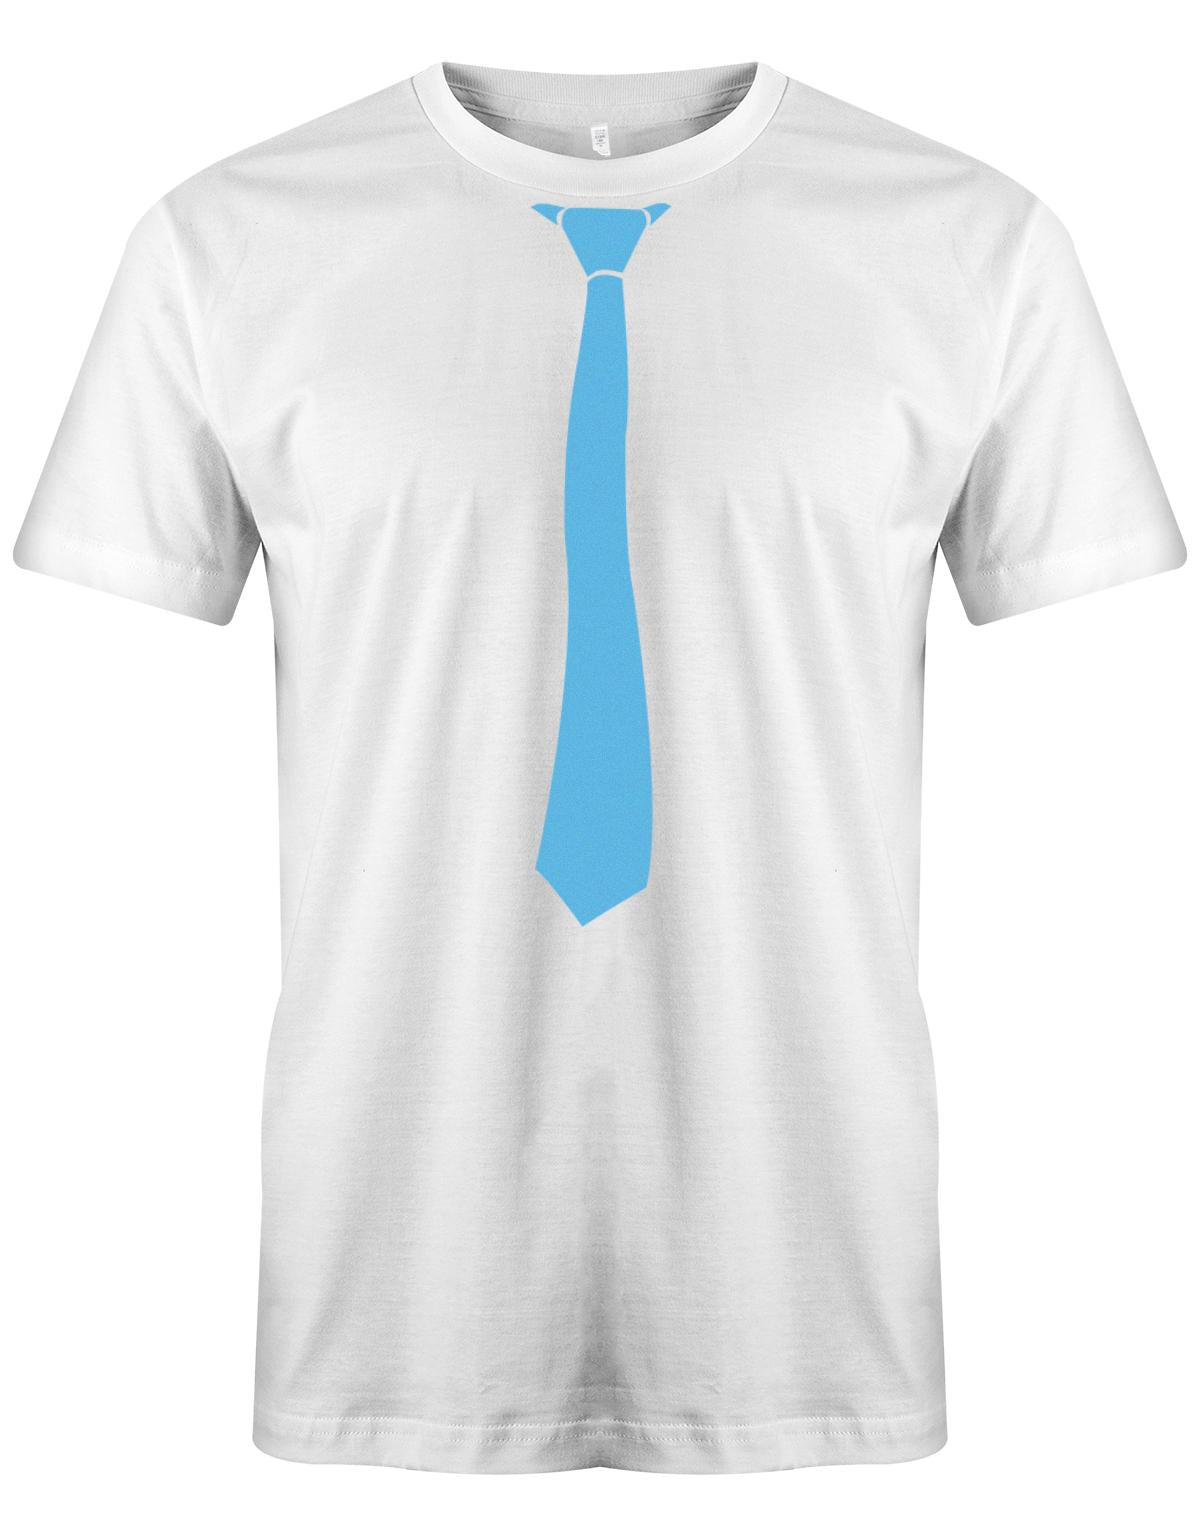 Krawatte-Sportlich-Herren-Shirt-JGA-Weiss-Hellblau